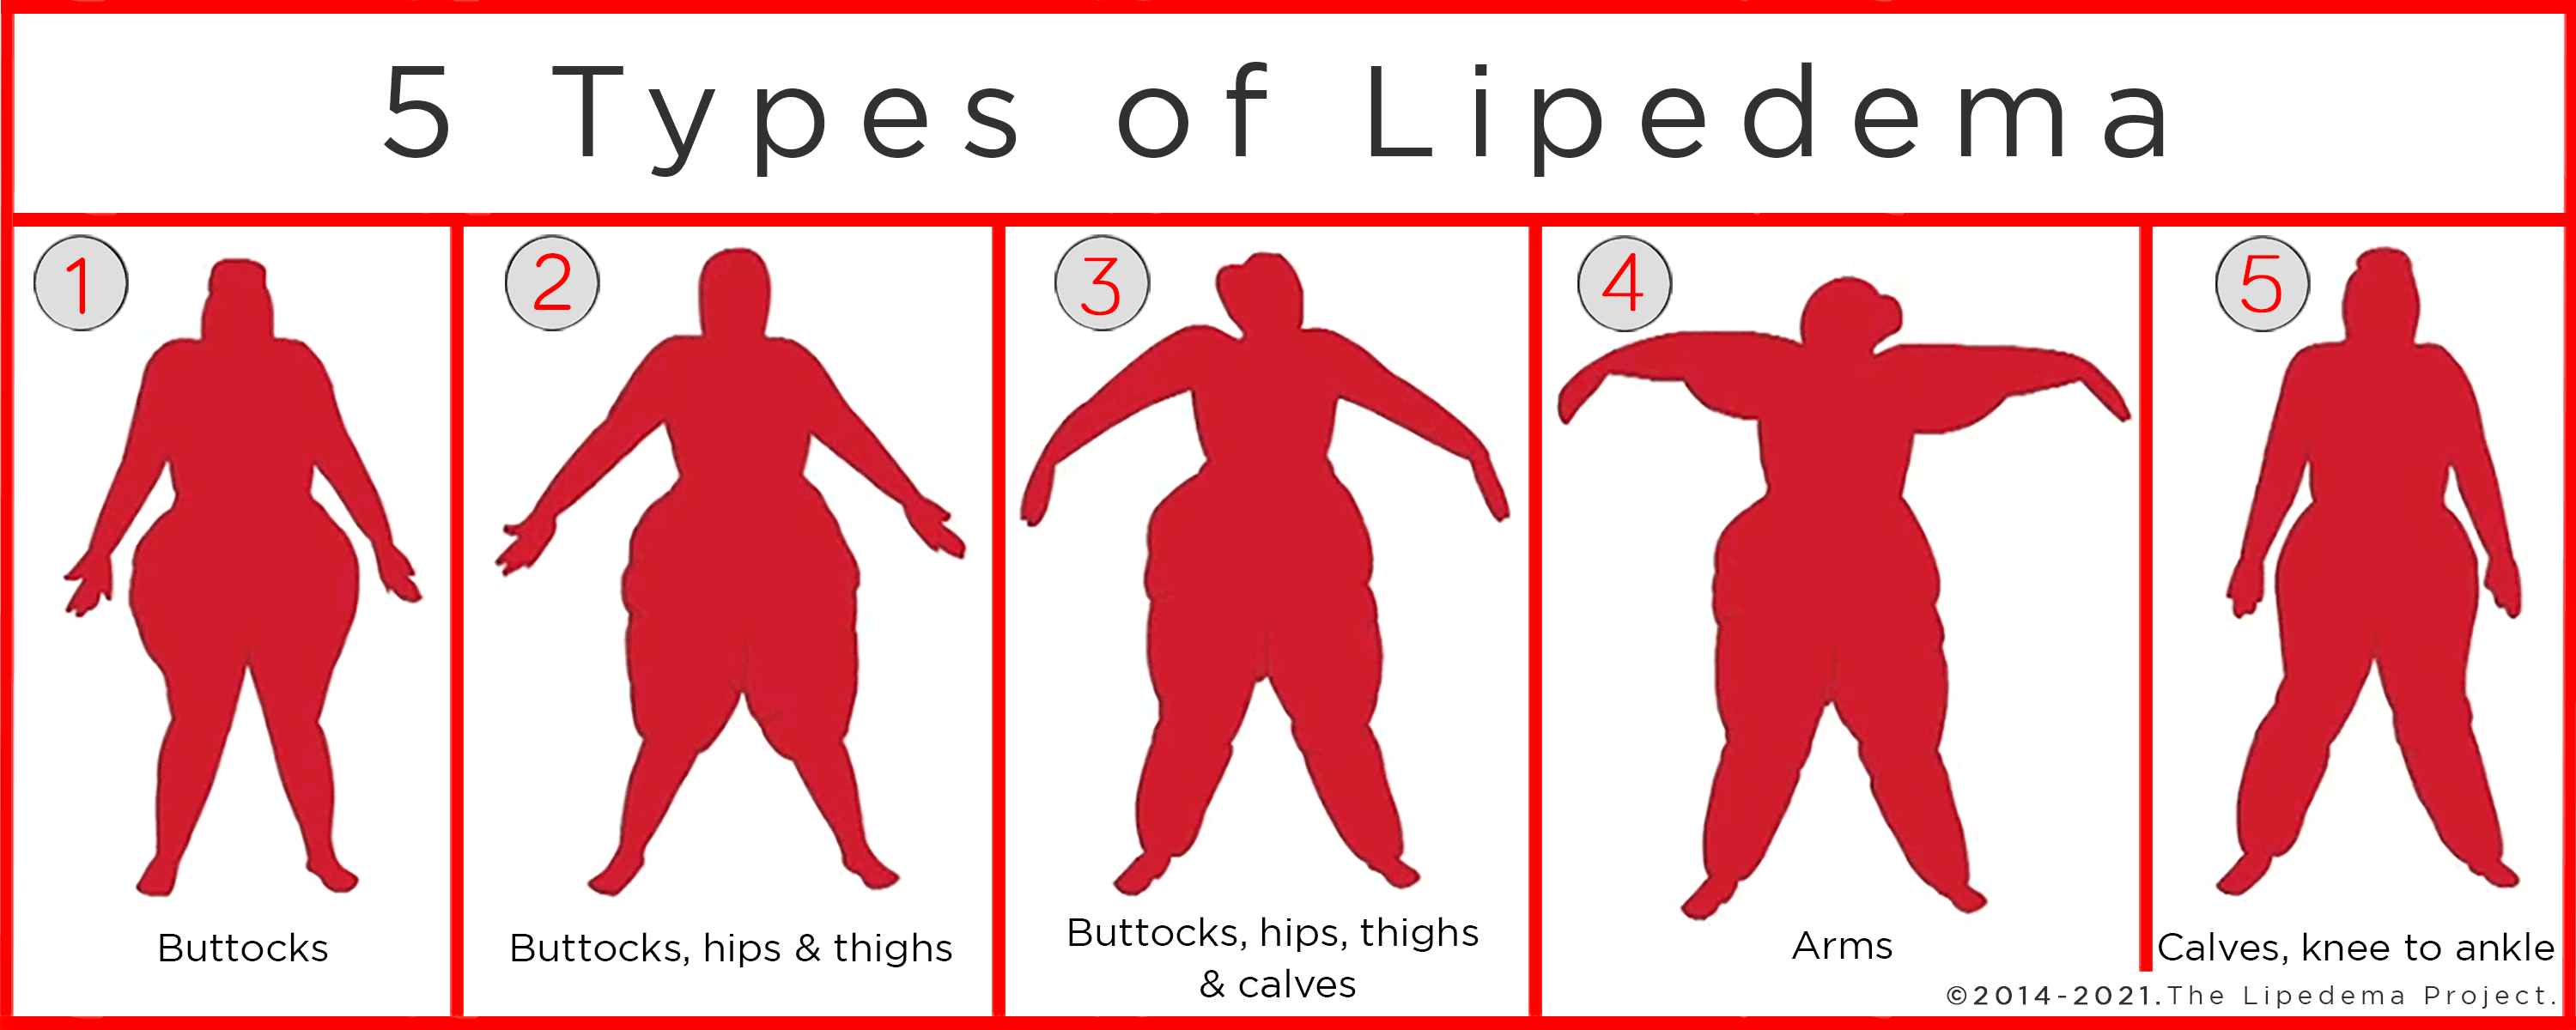 Where Does Lipedema Fat Accumulate?